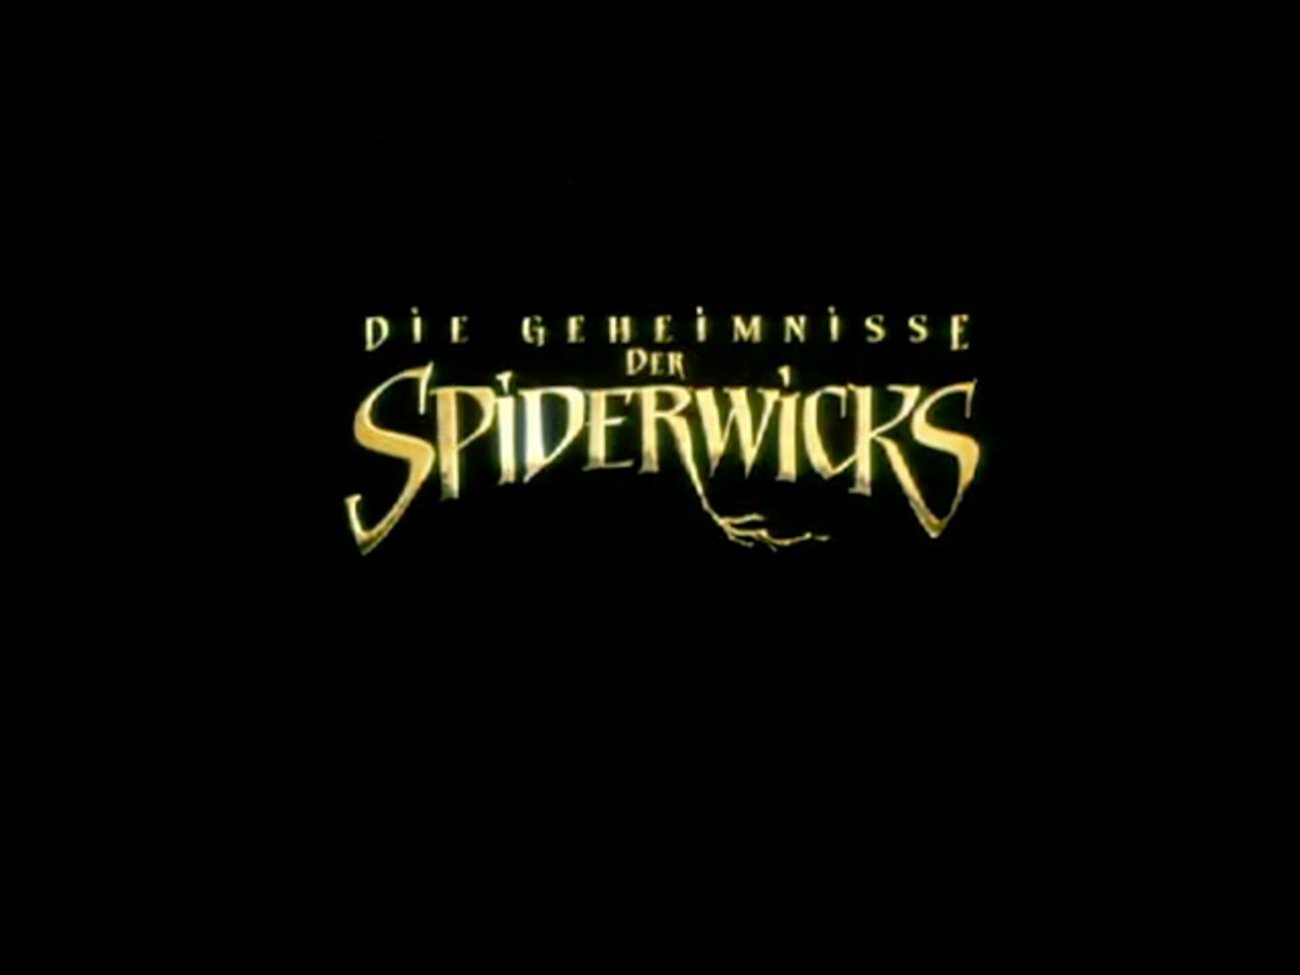 Die Geheimnisse der Spiderwicks: Offizieller Trailer